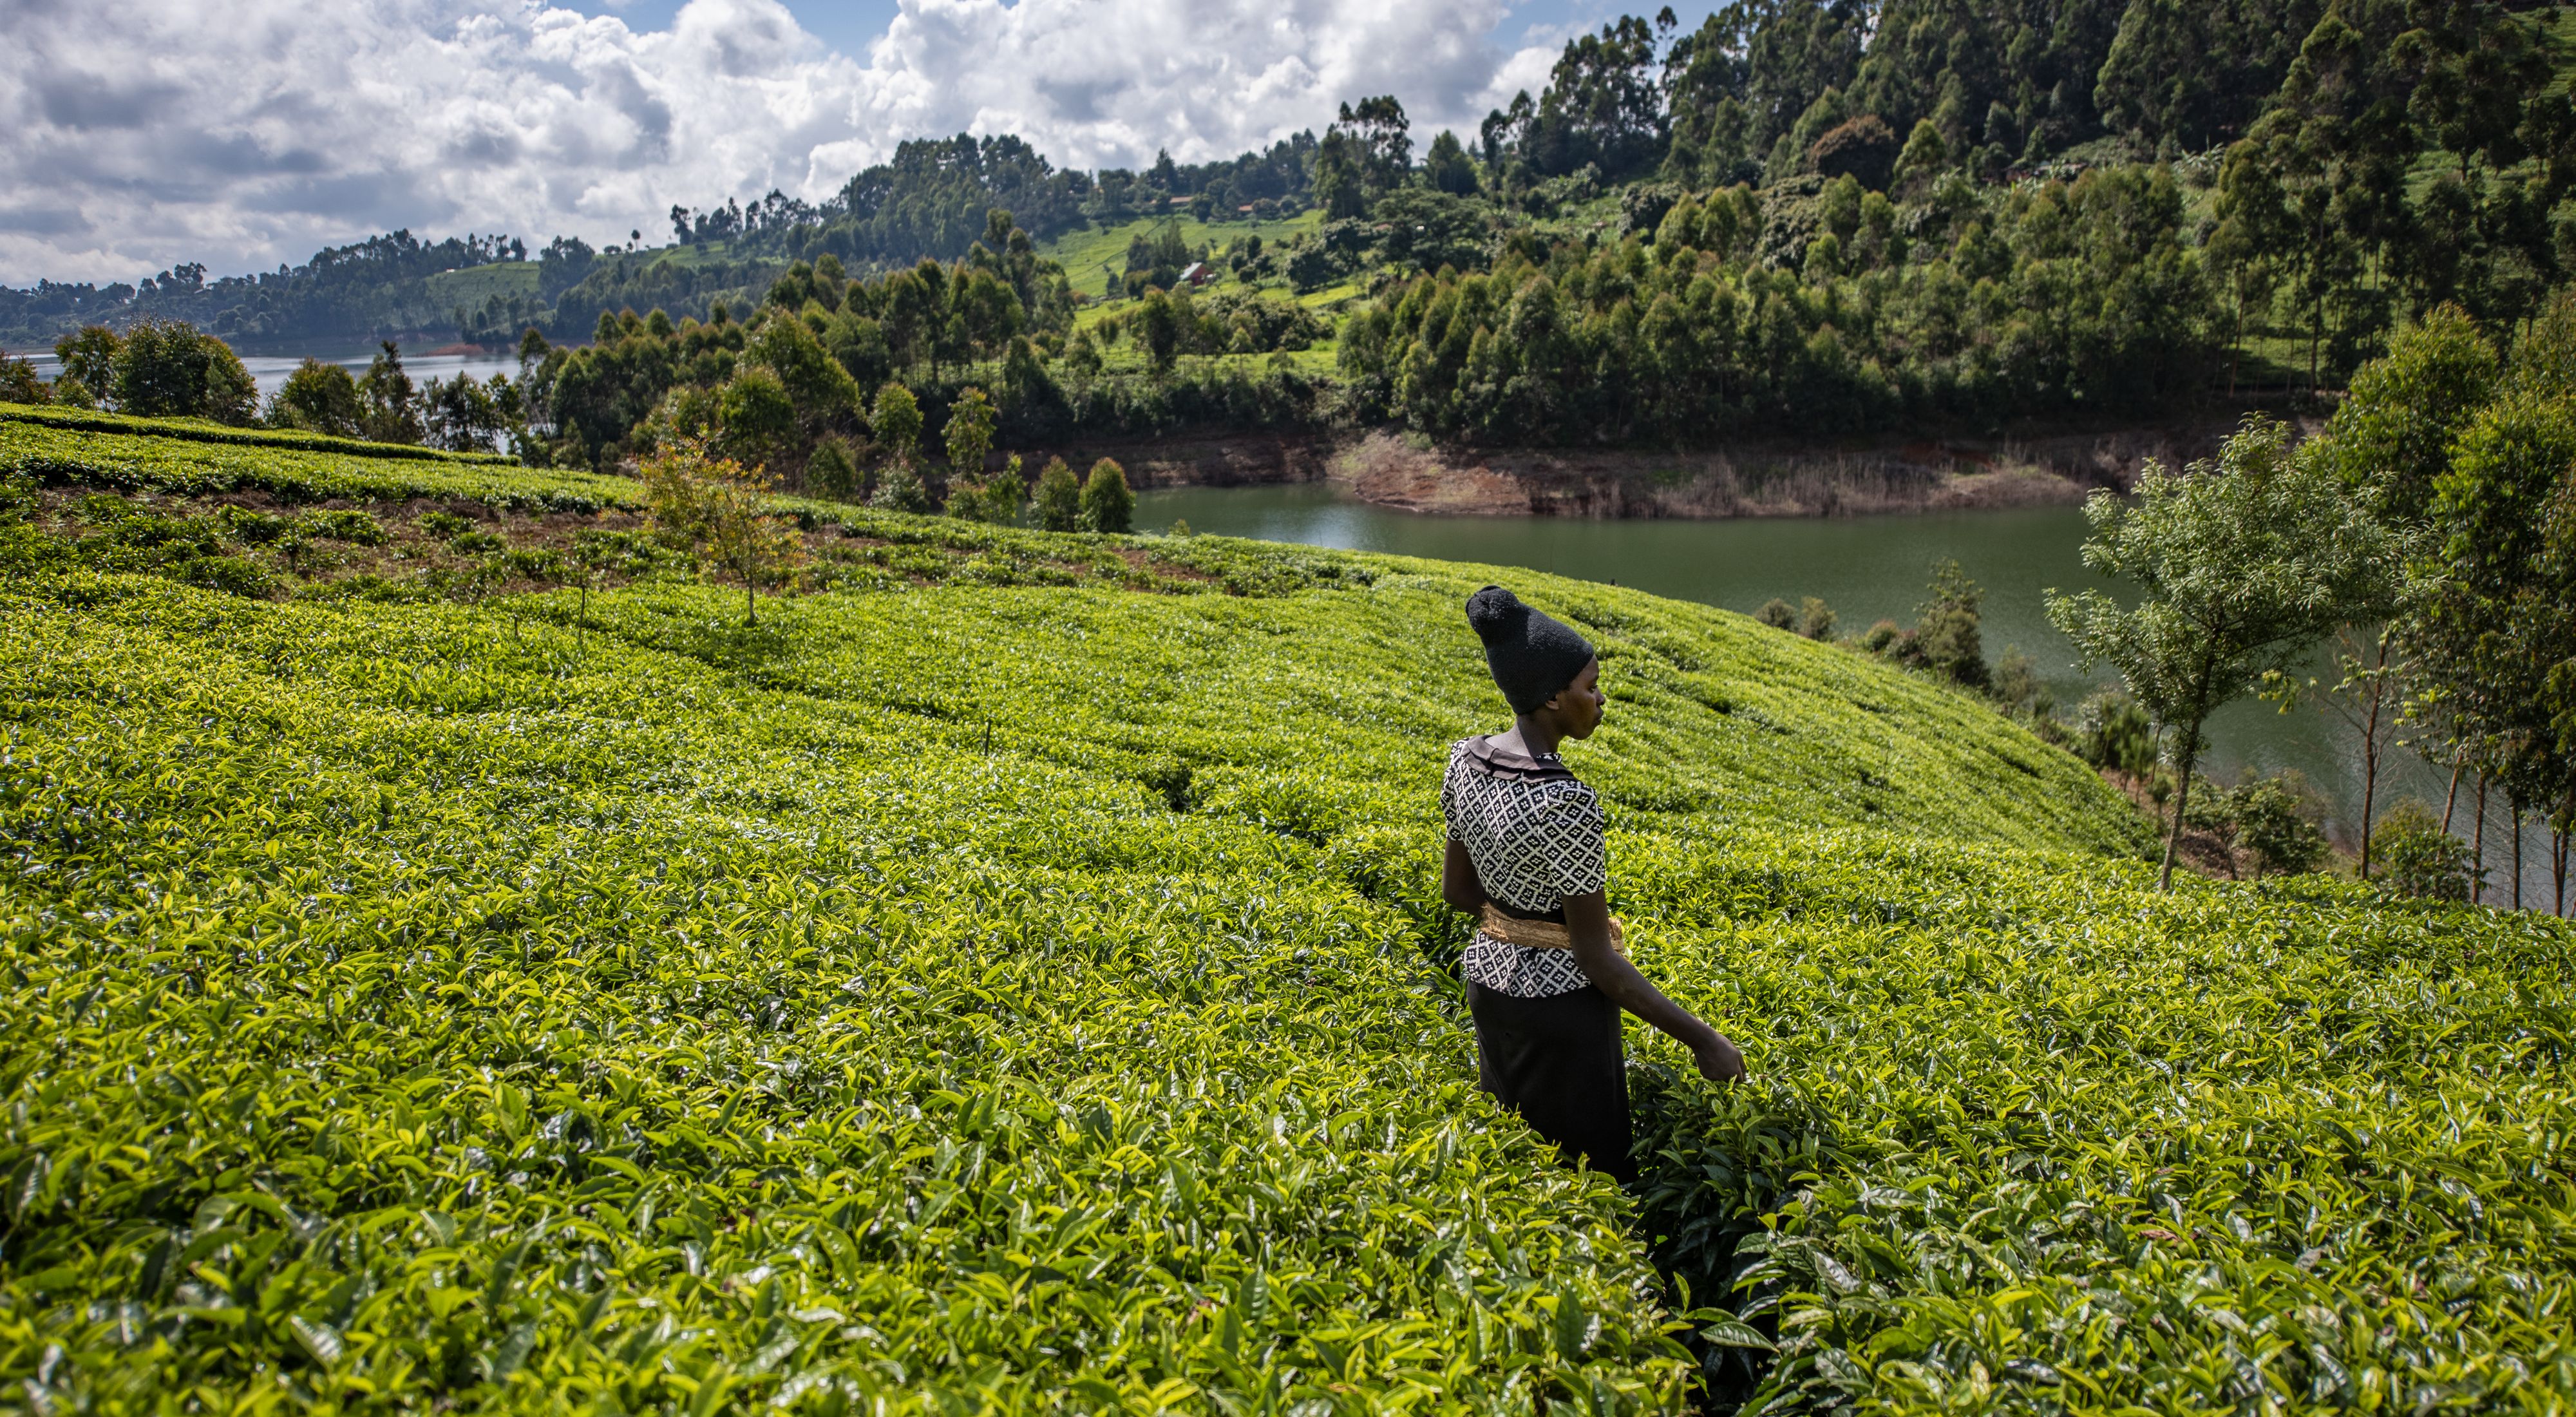 Una mujer en medio de un abundante cultivo de té cerca de un embalse.